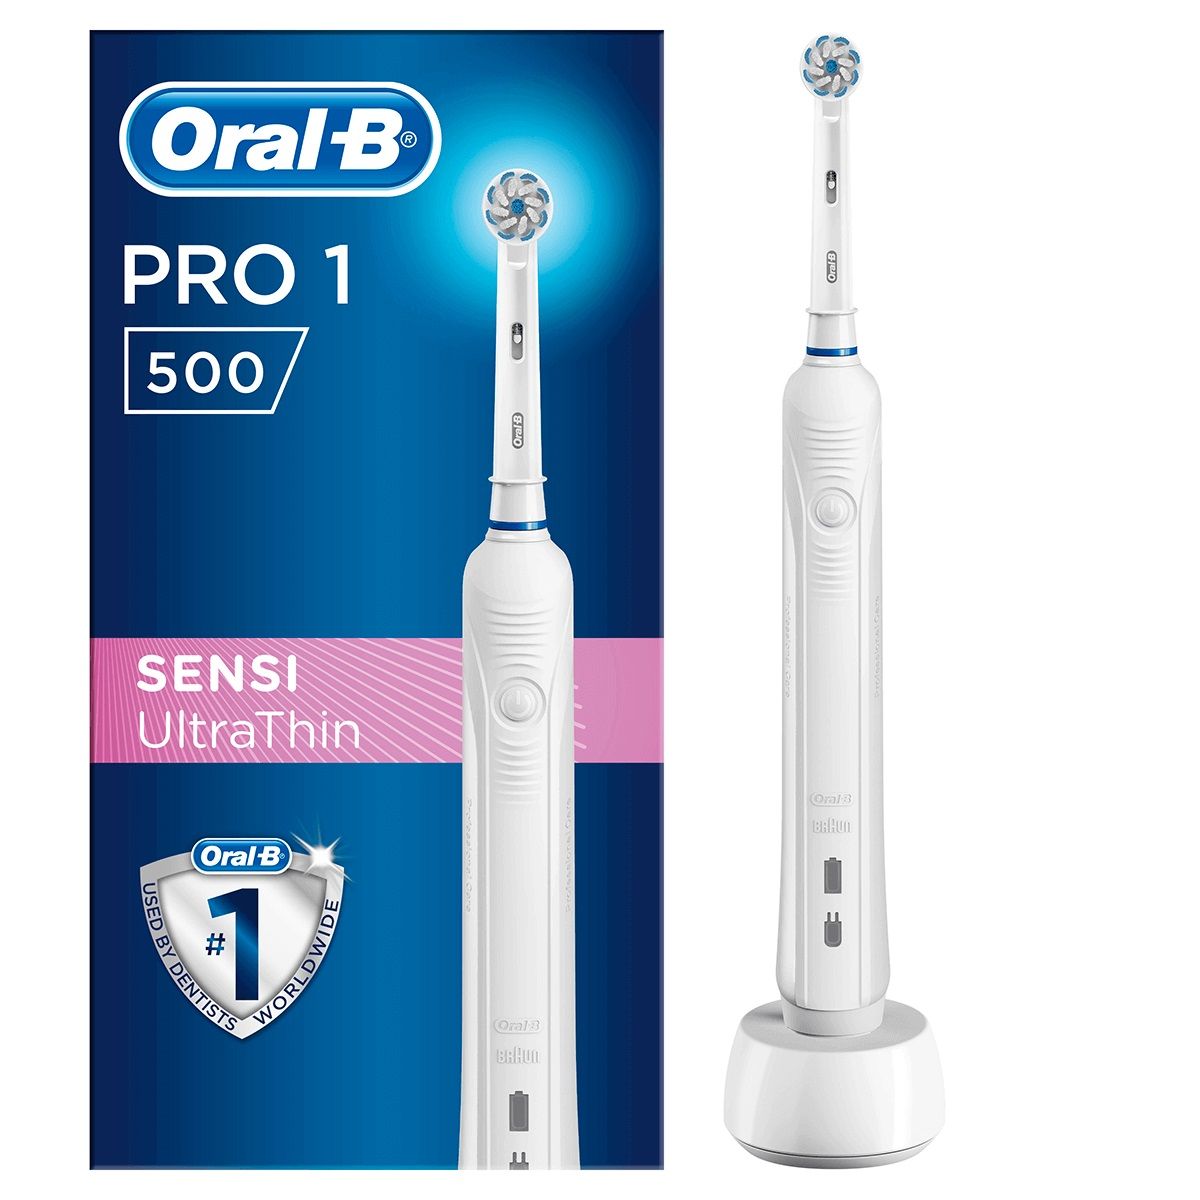 مسواک برقی اورال-بی مدل Pro1 500 SENSI UltraThin به همراه خمیر دندان مدل Pro Onarim حجم 50 میلی لیتر -  - 1